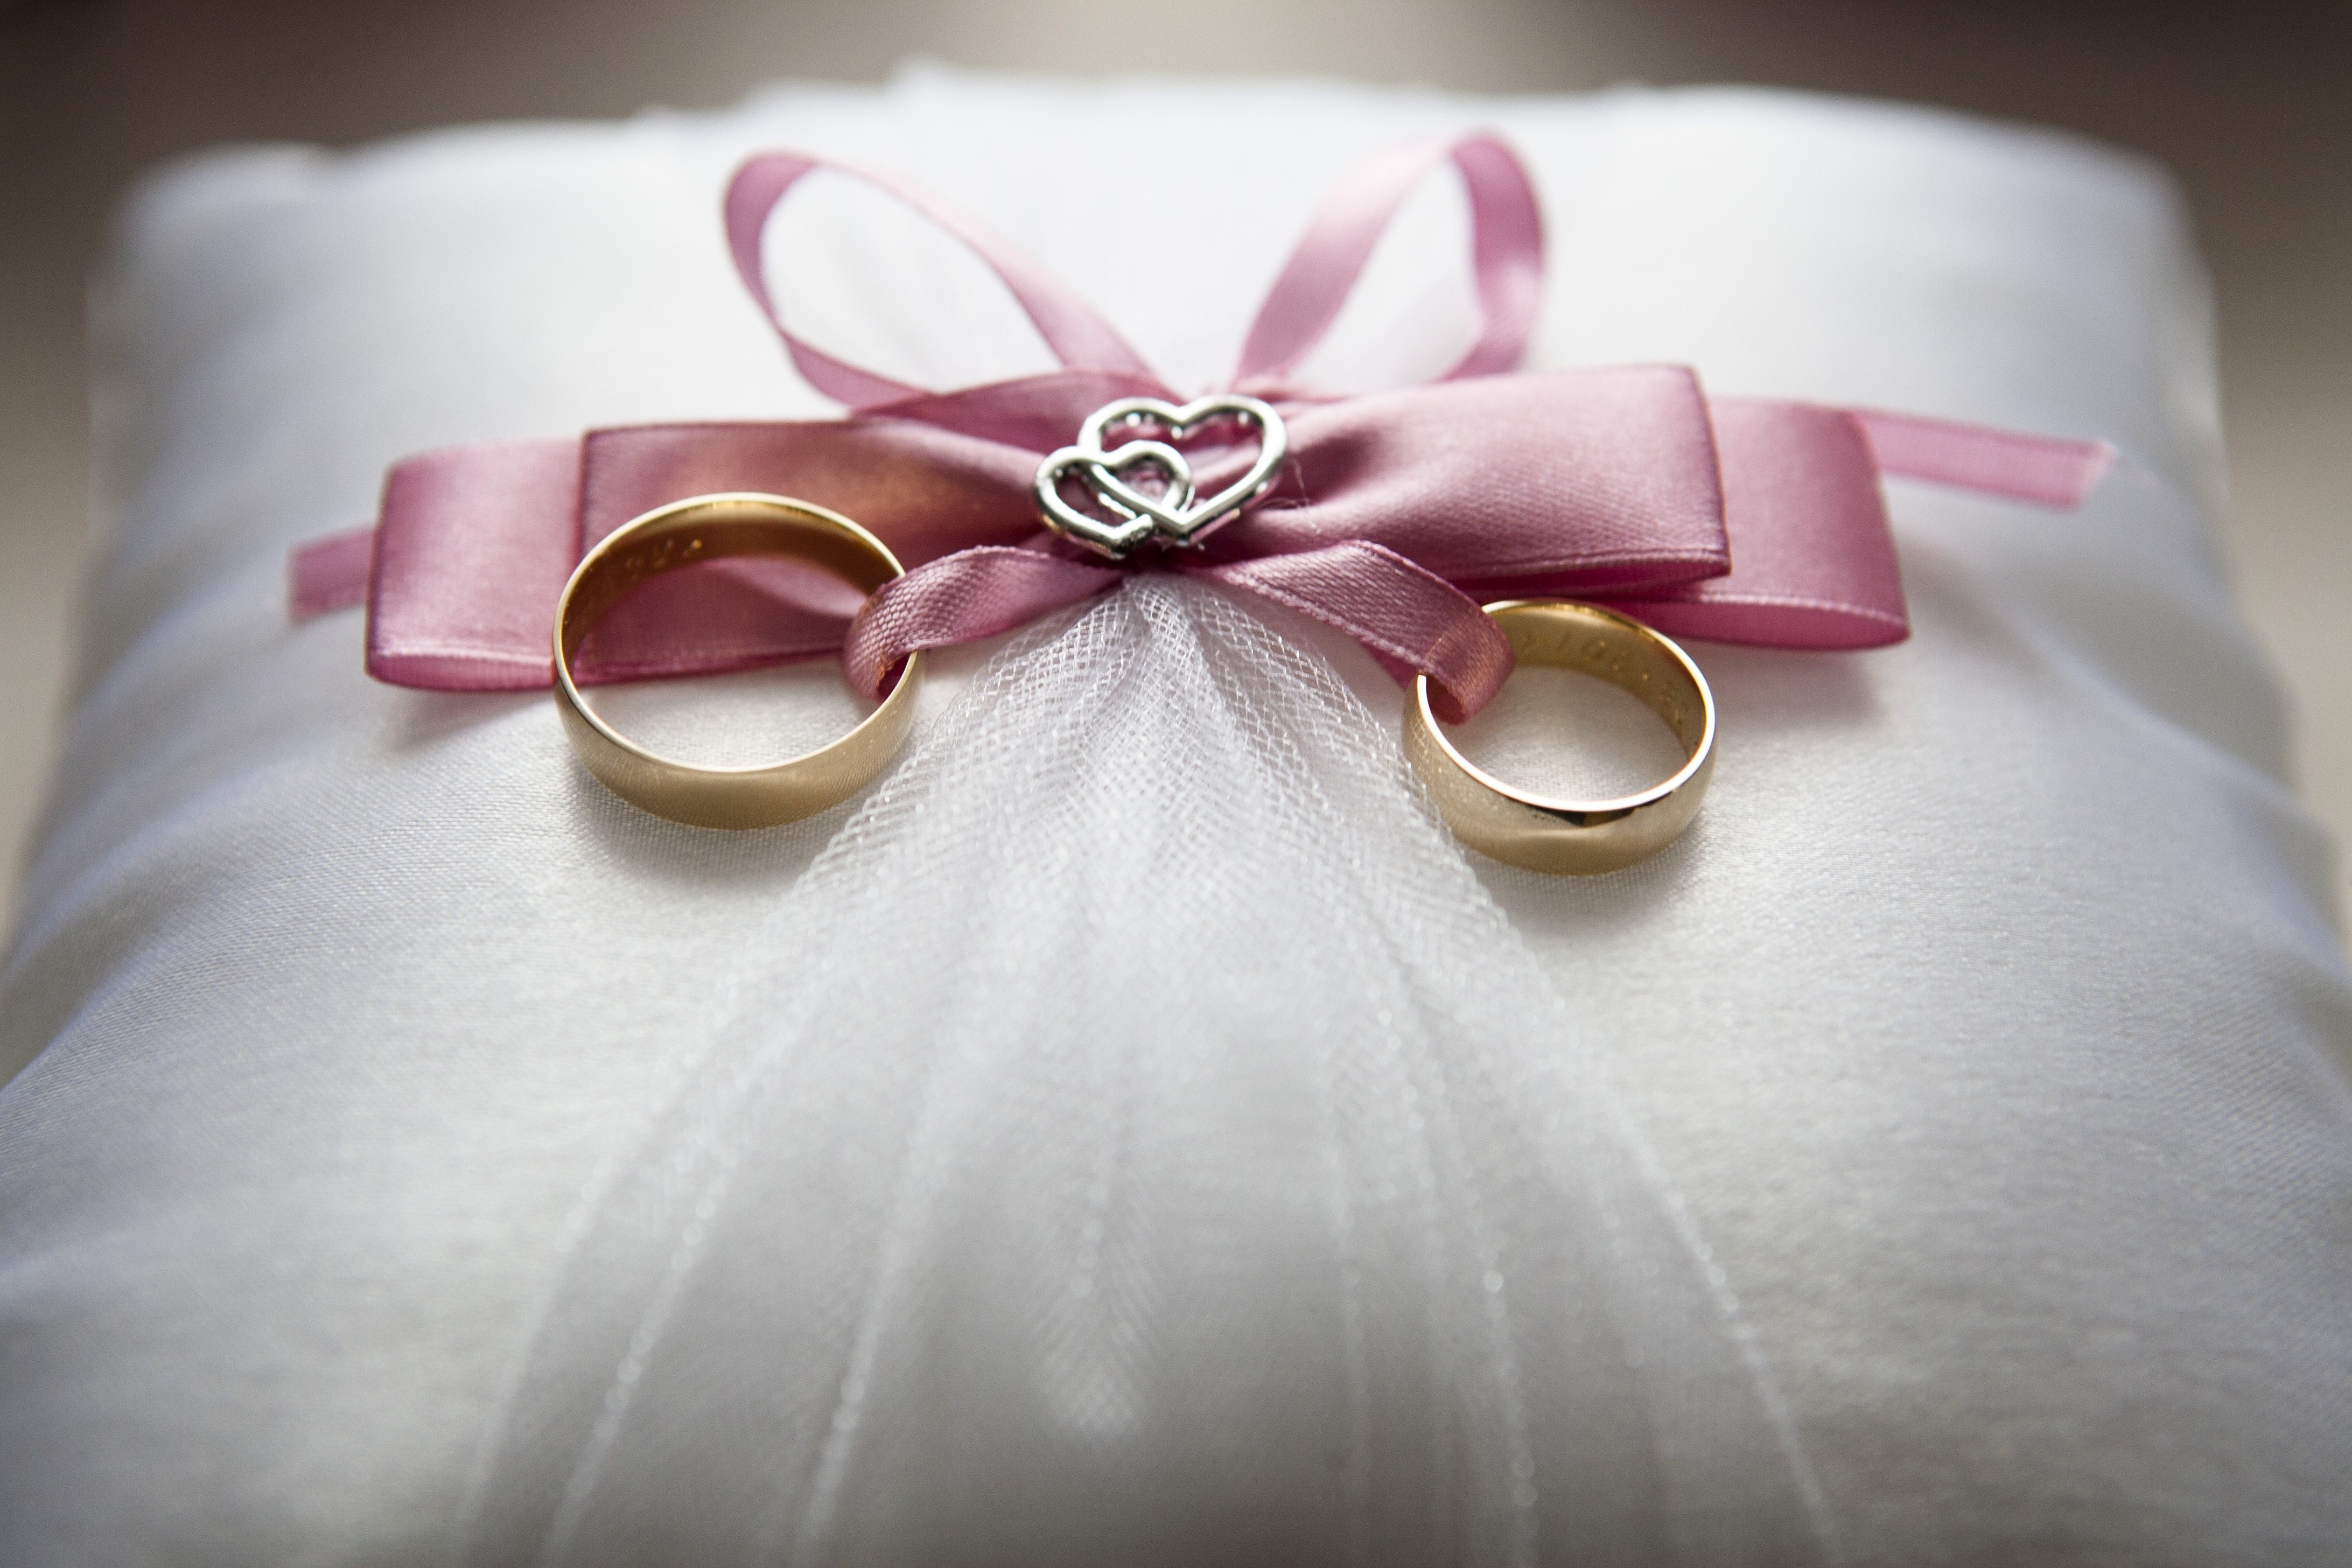 חתונה בקפריסין הכל כלול - להתחתן בראש שקט
